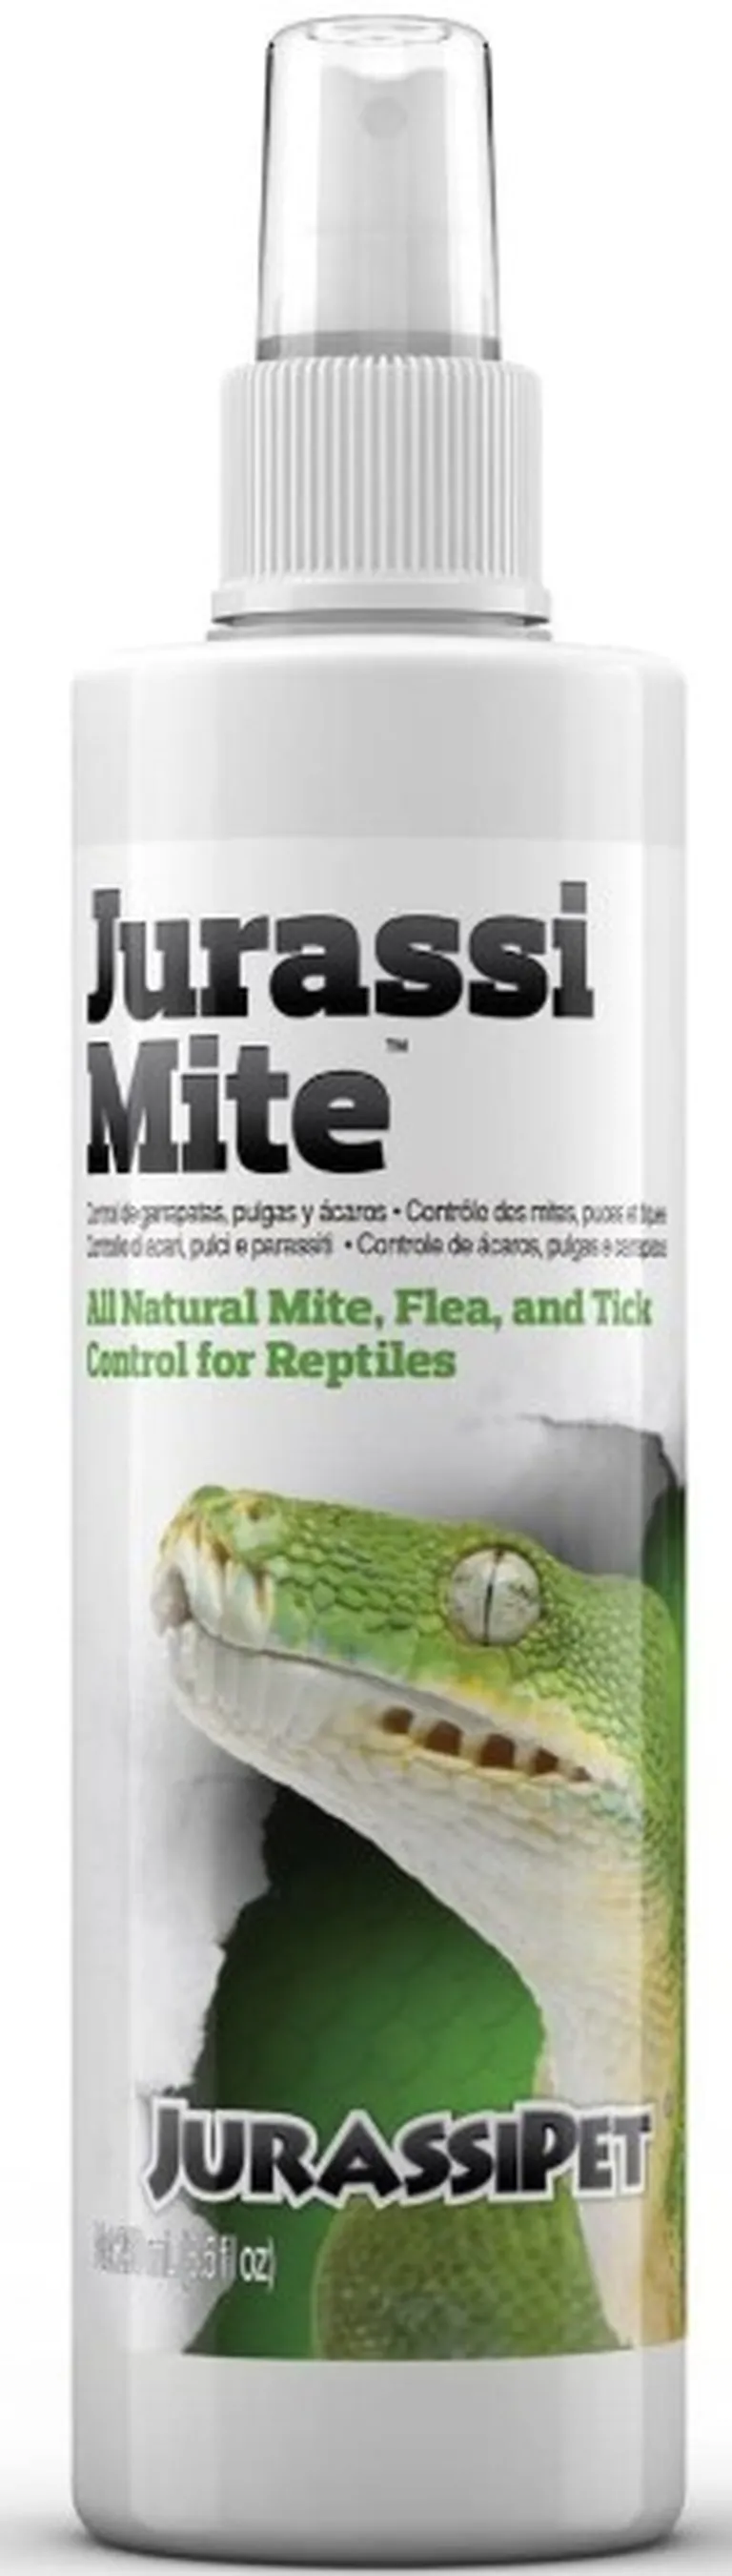 JurassiPet JurassiMite Spray All Natural Mite, Flea and Tick Control for Reptiles Photo 2